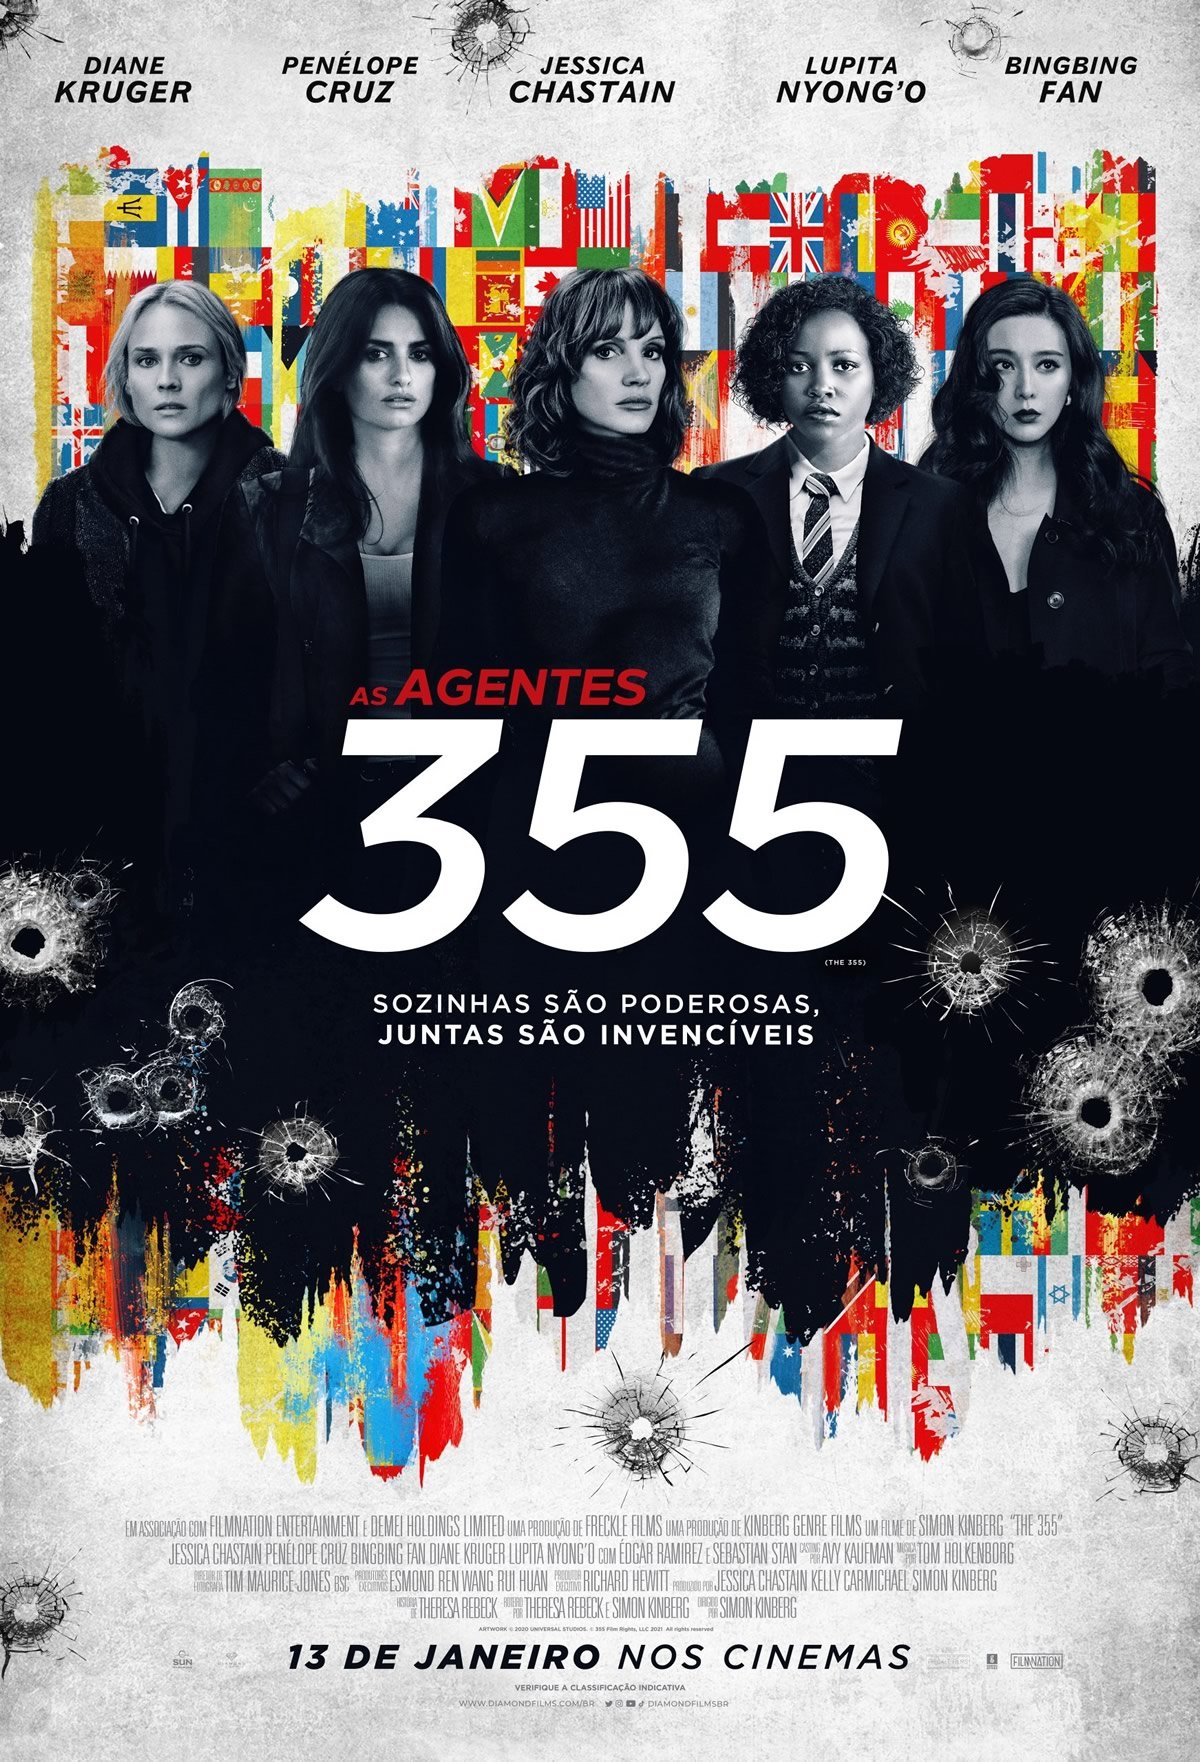 As Agentes 355 Filme de Acao Diamond Films Brasil - As Agentes 355 | Filme de ação com Jessica Chastain, Lupita Nyong’o, Diane Kruger e Penélope Cruz